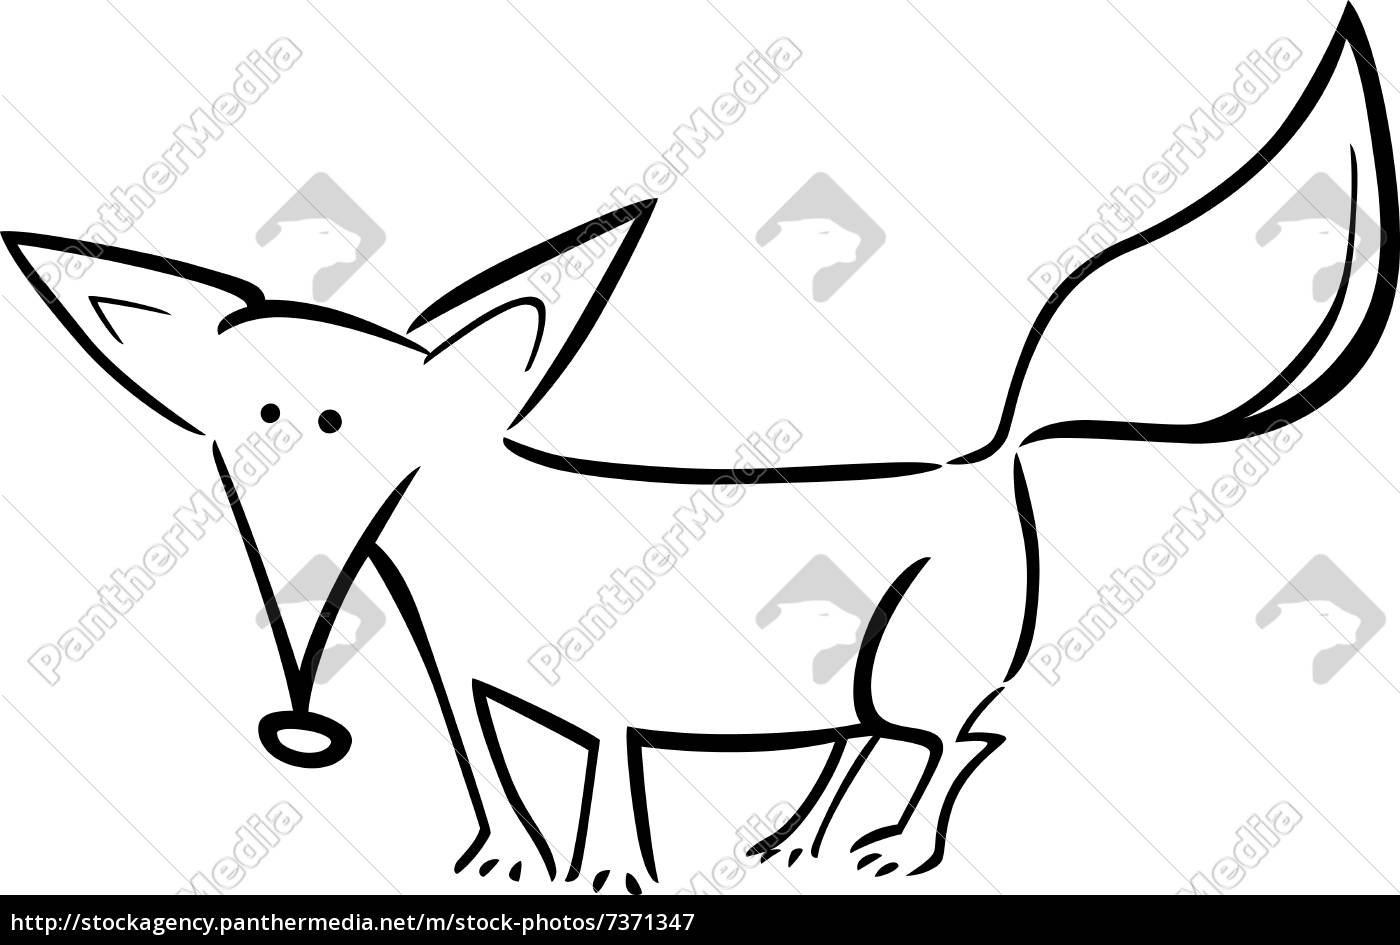 ilustrações de raposa dos desenhos animados de animais fofos